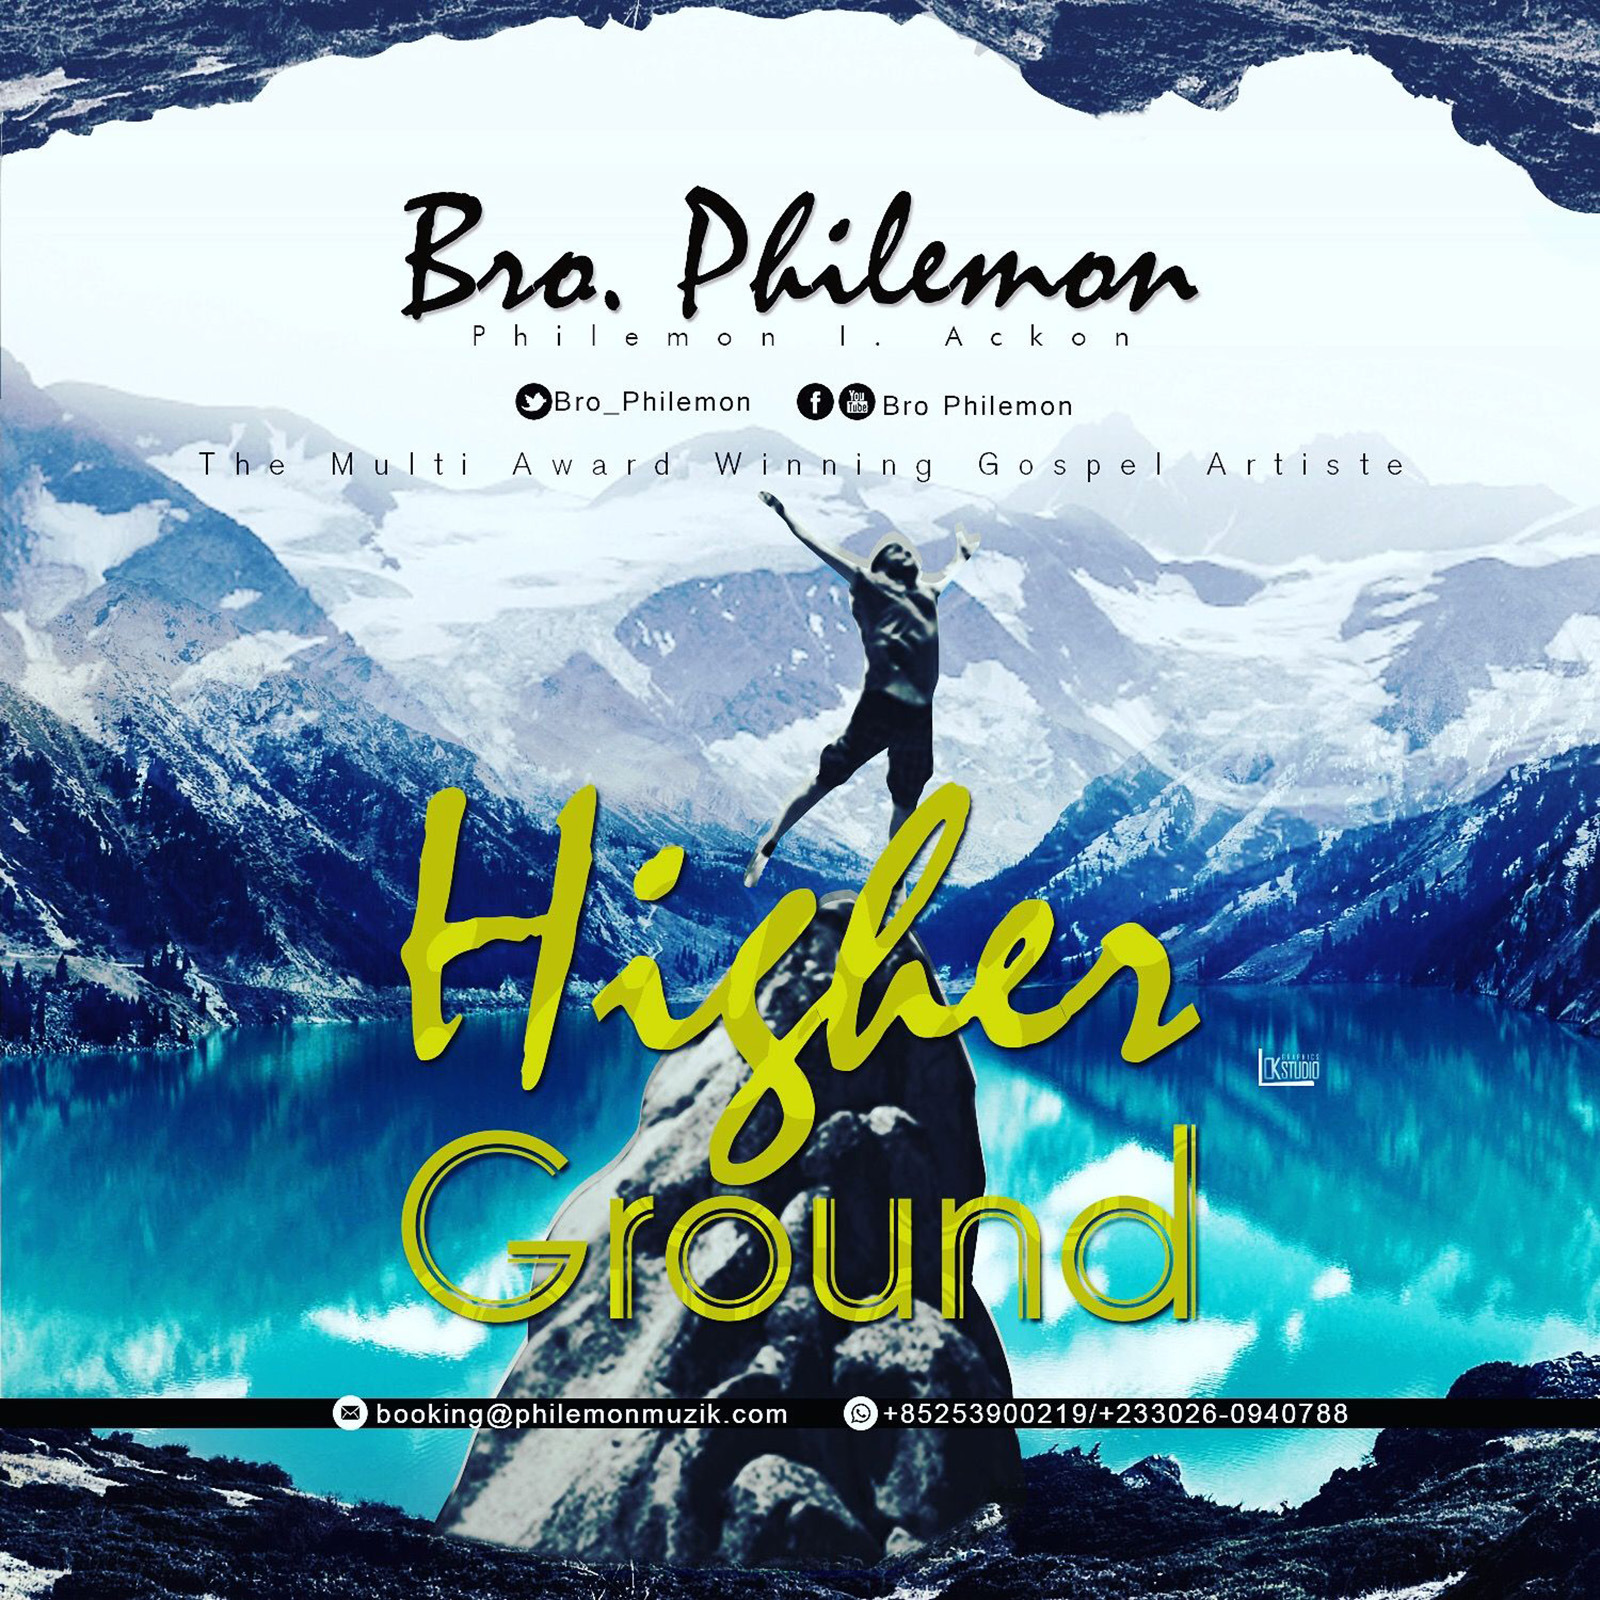 Higher Ground by Bro Philemon